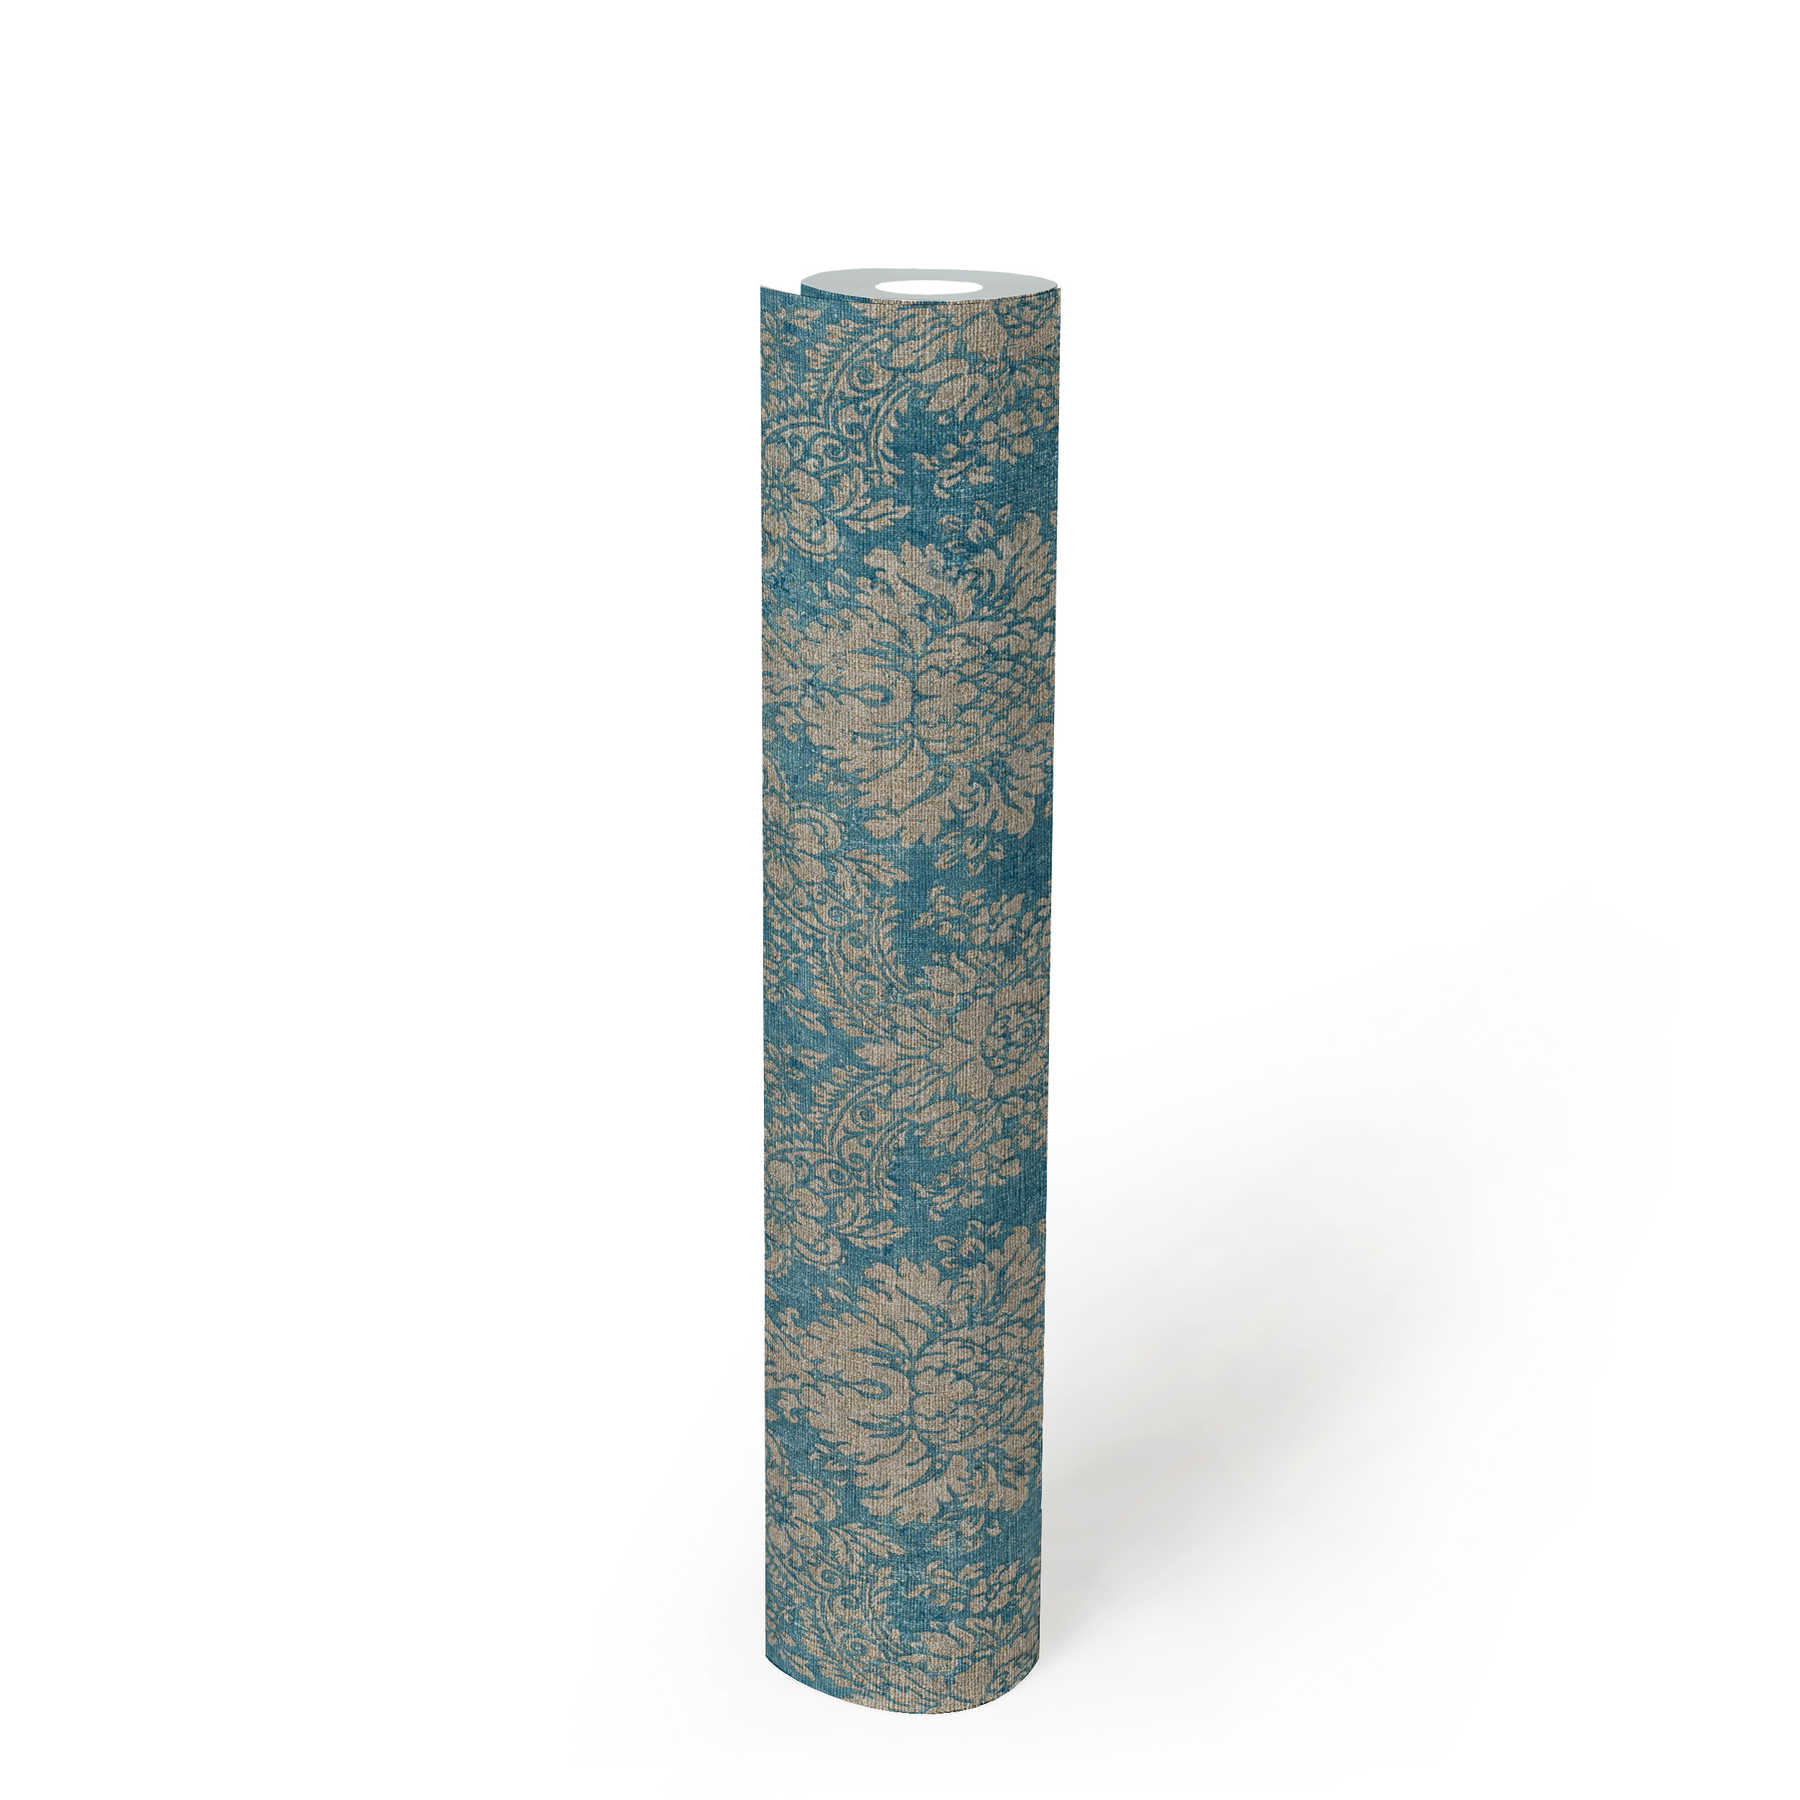             Papier peint ornemental floral avec effet métallique & aspect usé - bleu, marron, métallique
        